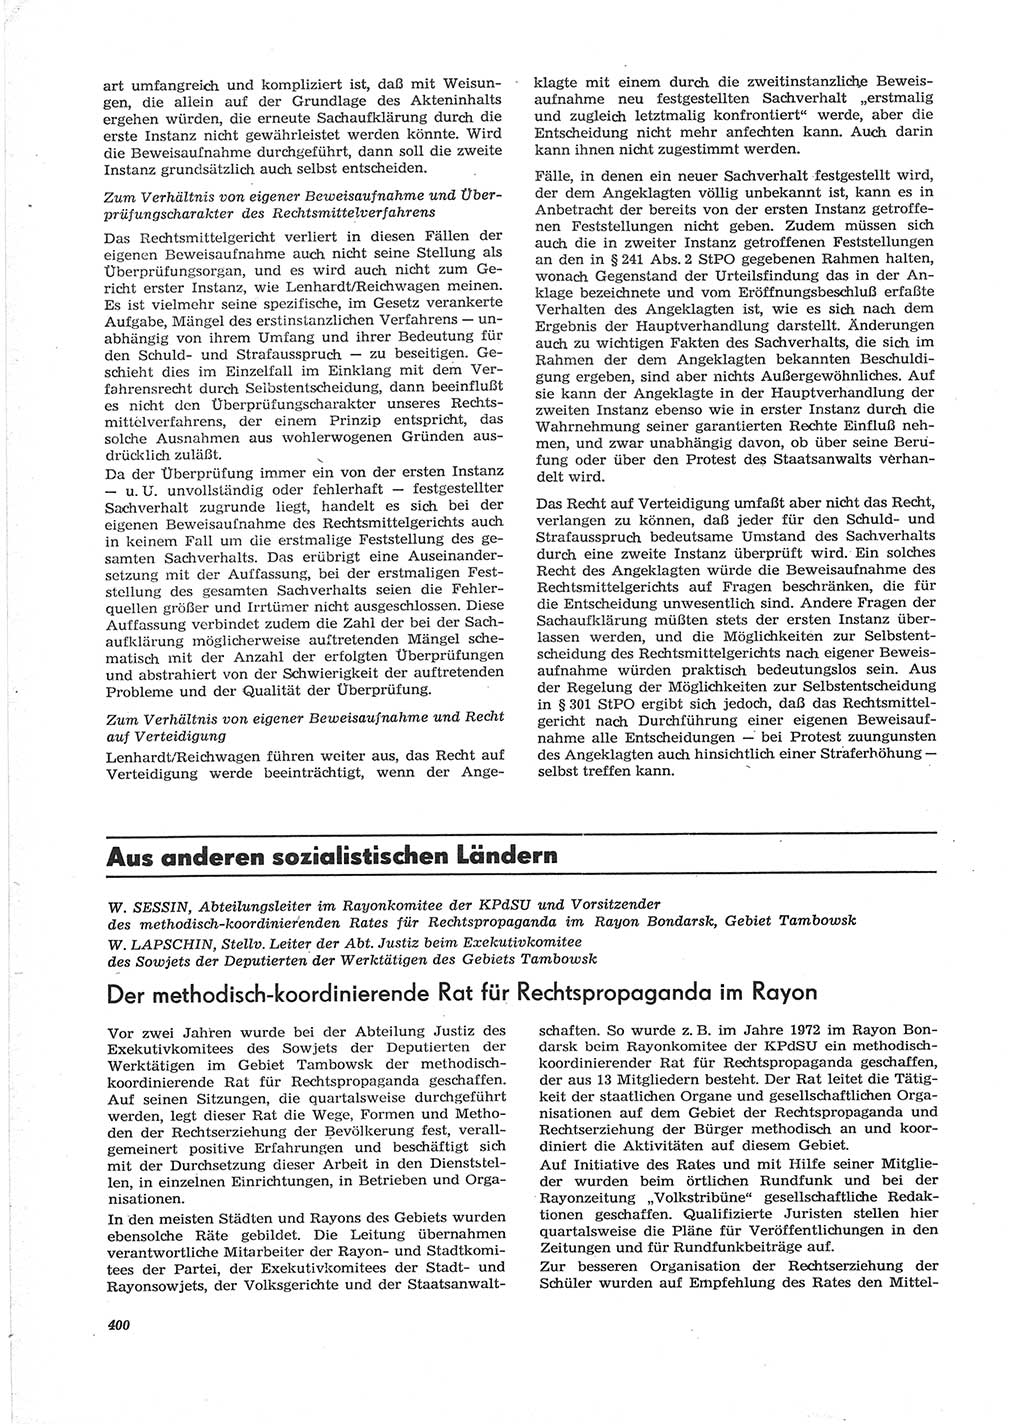 Neue Justiz (NJ), Zeitschrift für Recht und Rechtswissenschaft [Deutsche Demokratische Republik (DDR)], 28. Jahrgang 1974, Seite 400 (NJ DDR 1974, S. 400)